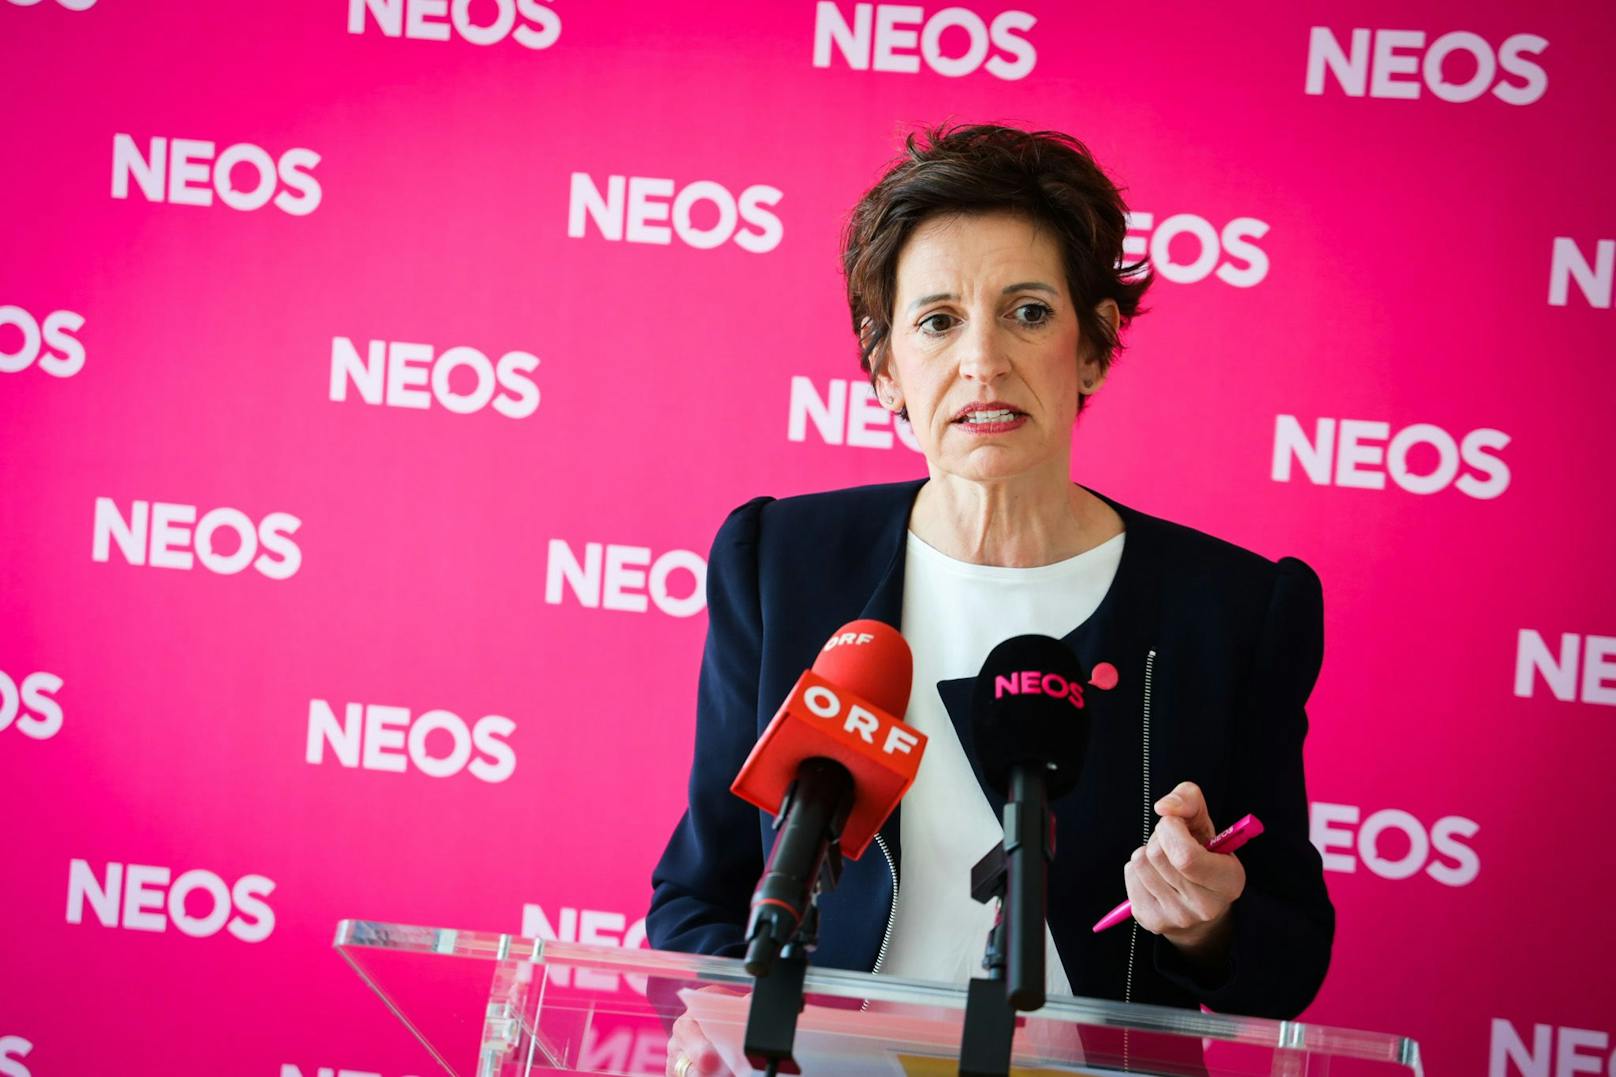 NEOS wählt Mikl nicht: "Rutsche für Kickl zum Kanzler"